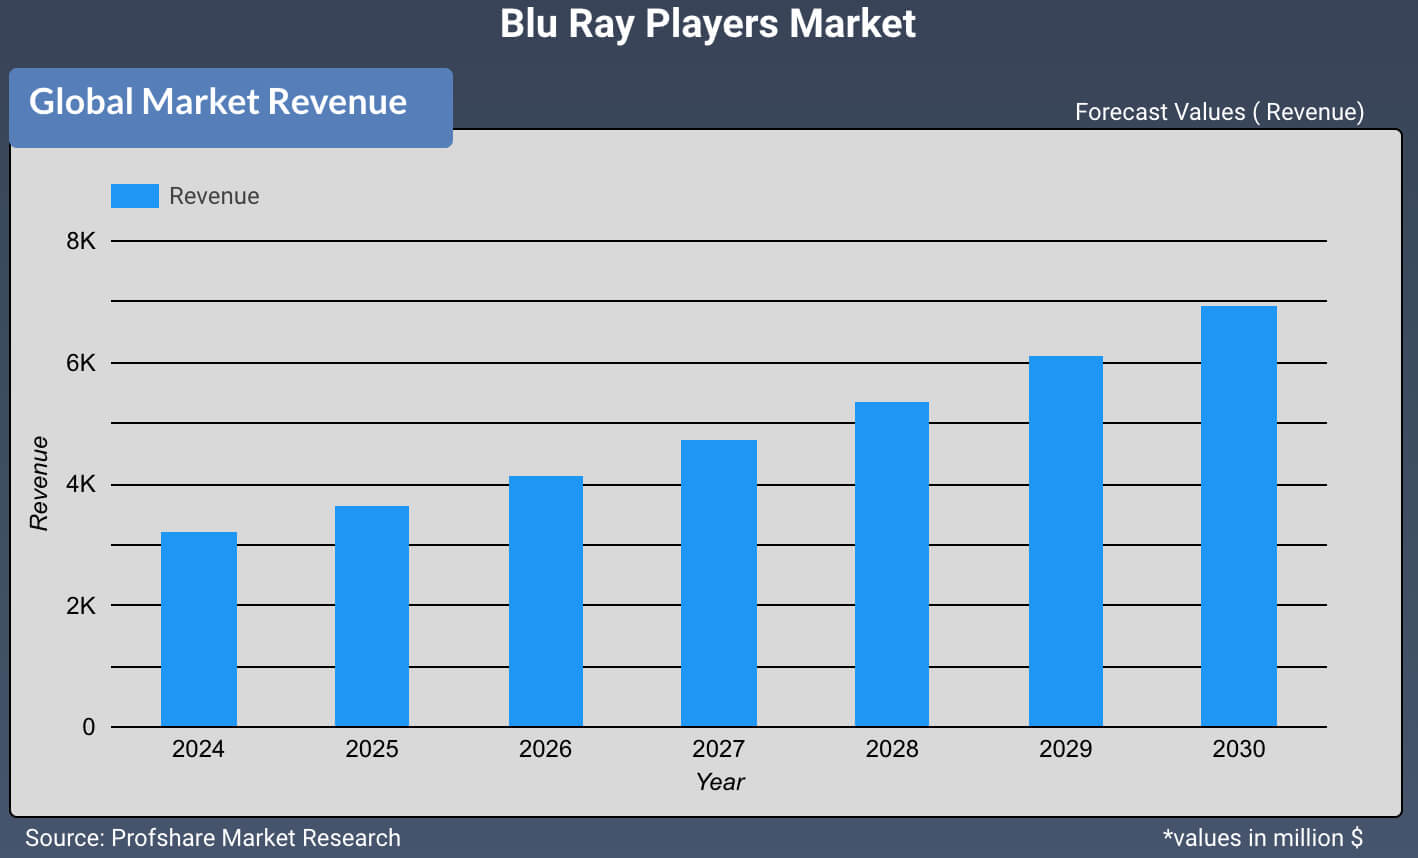 Blu Ray Players Market